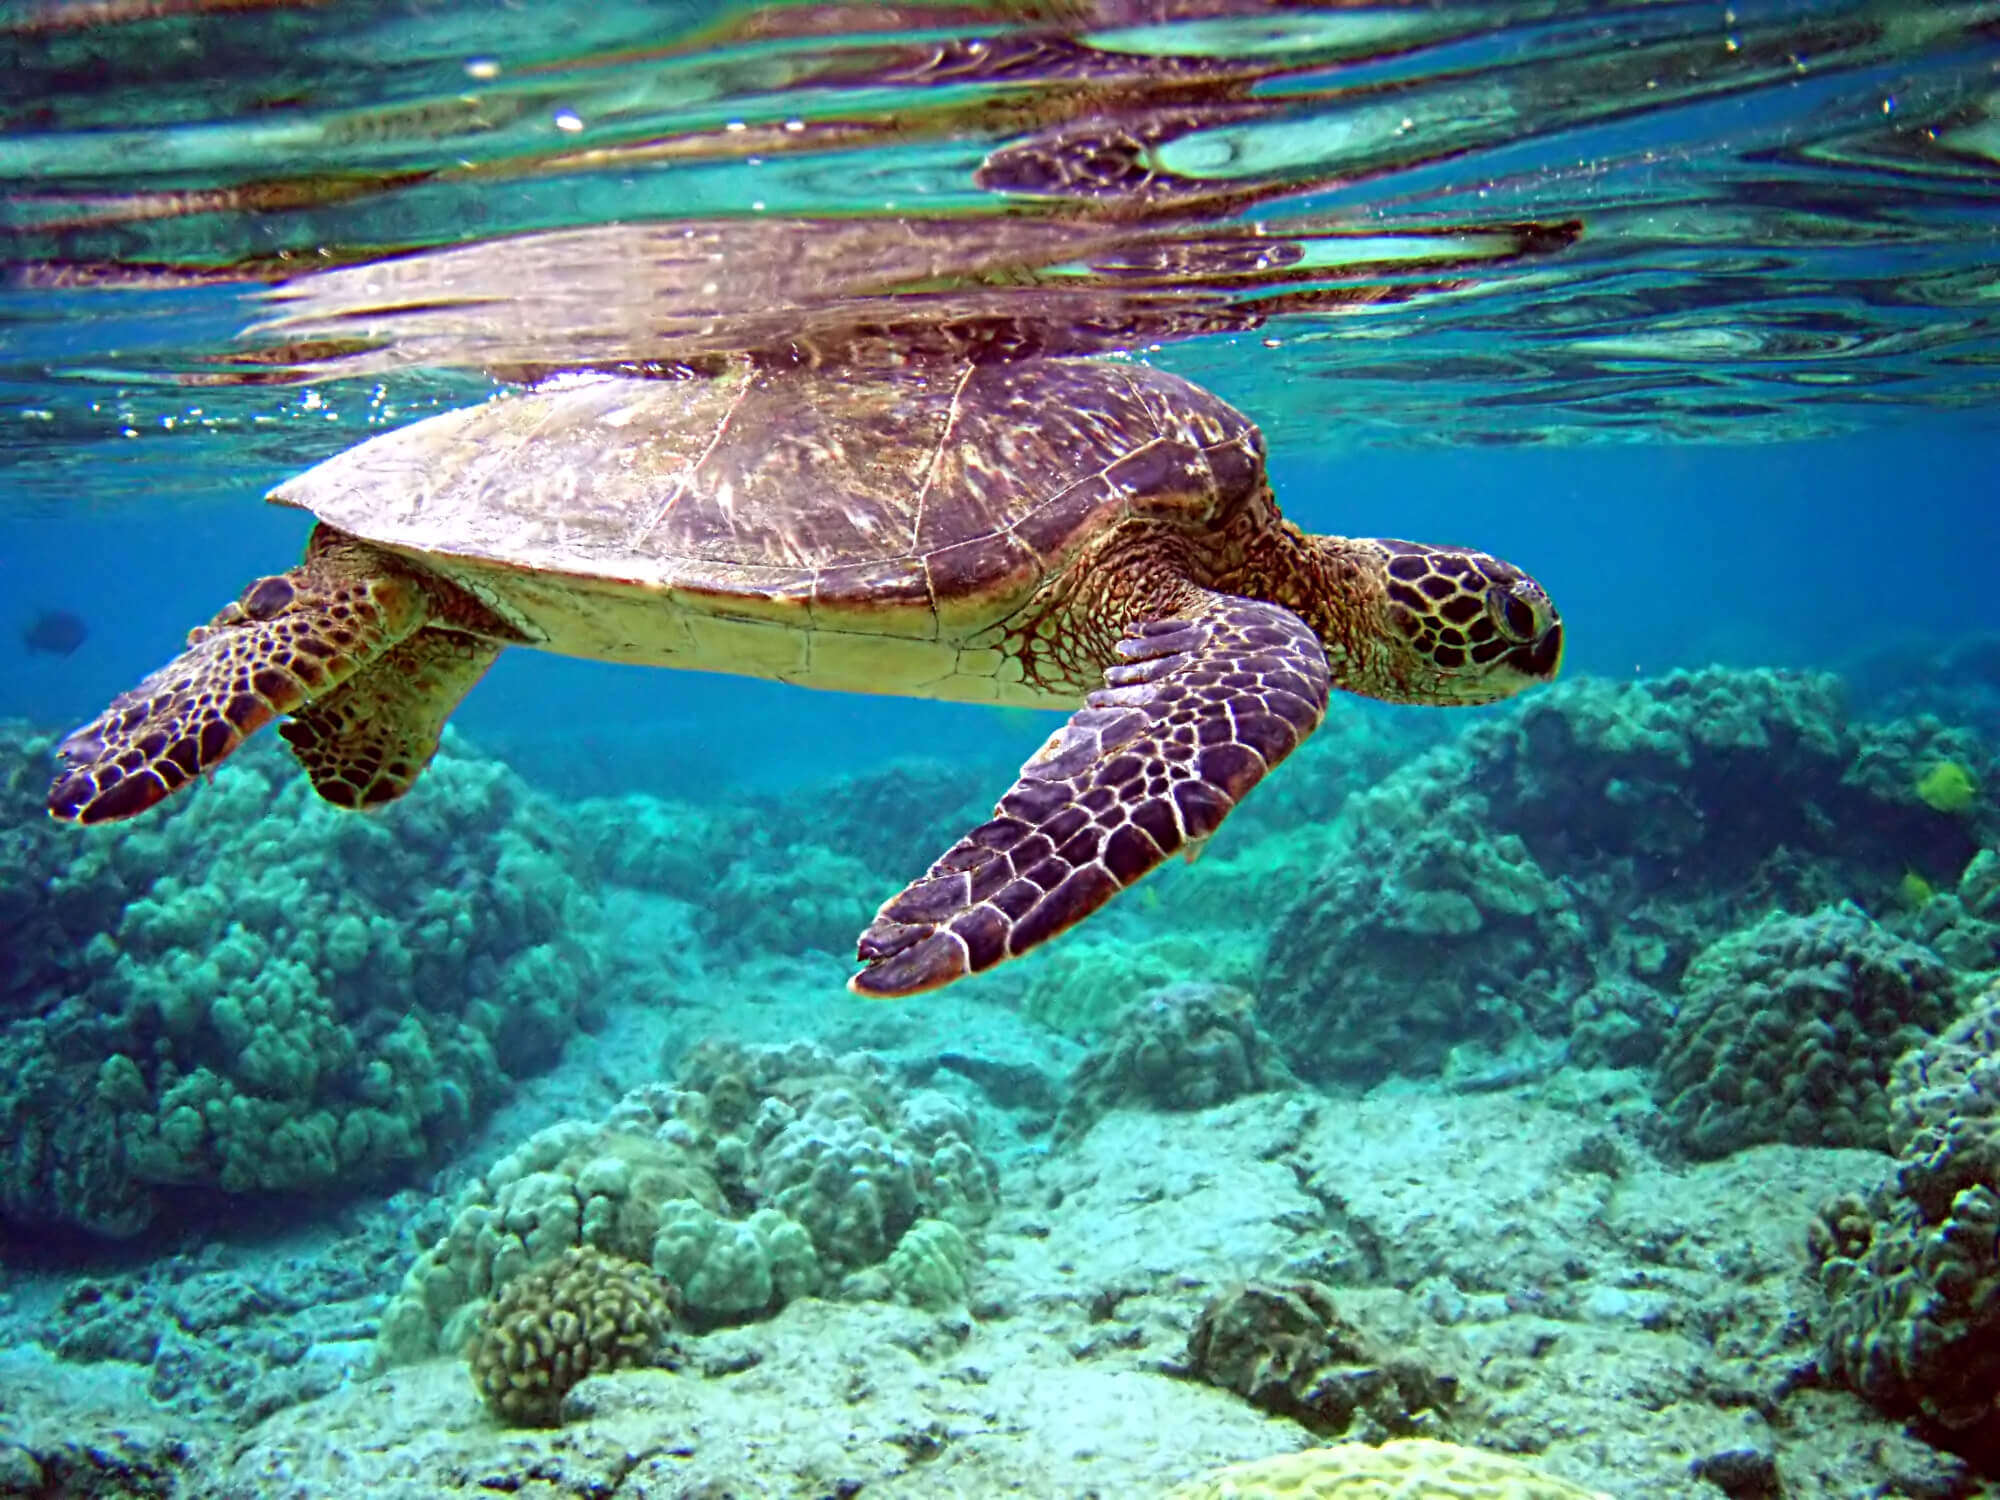 Mauritius Aquarium: Explore The Marine Life Of Mauritius!